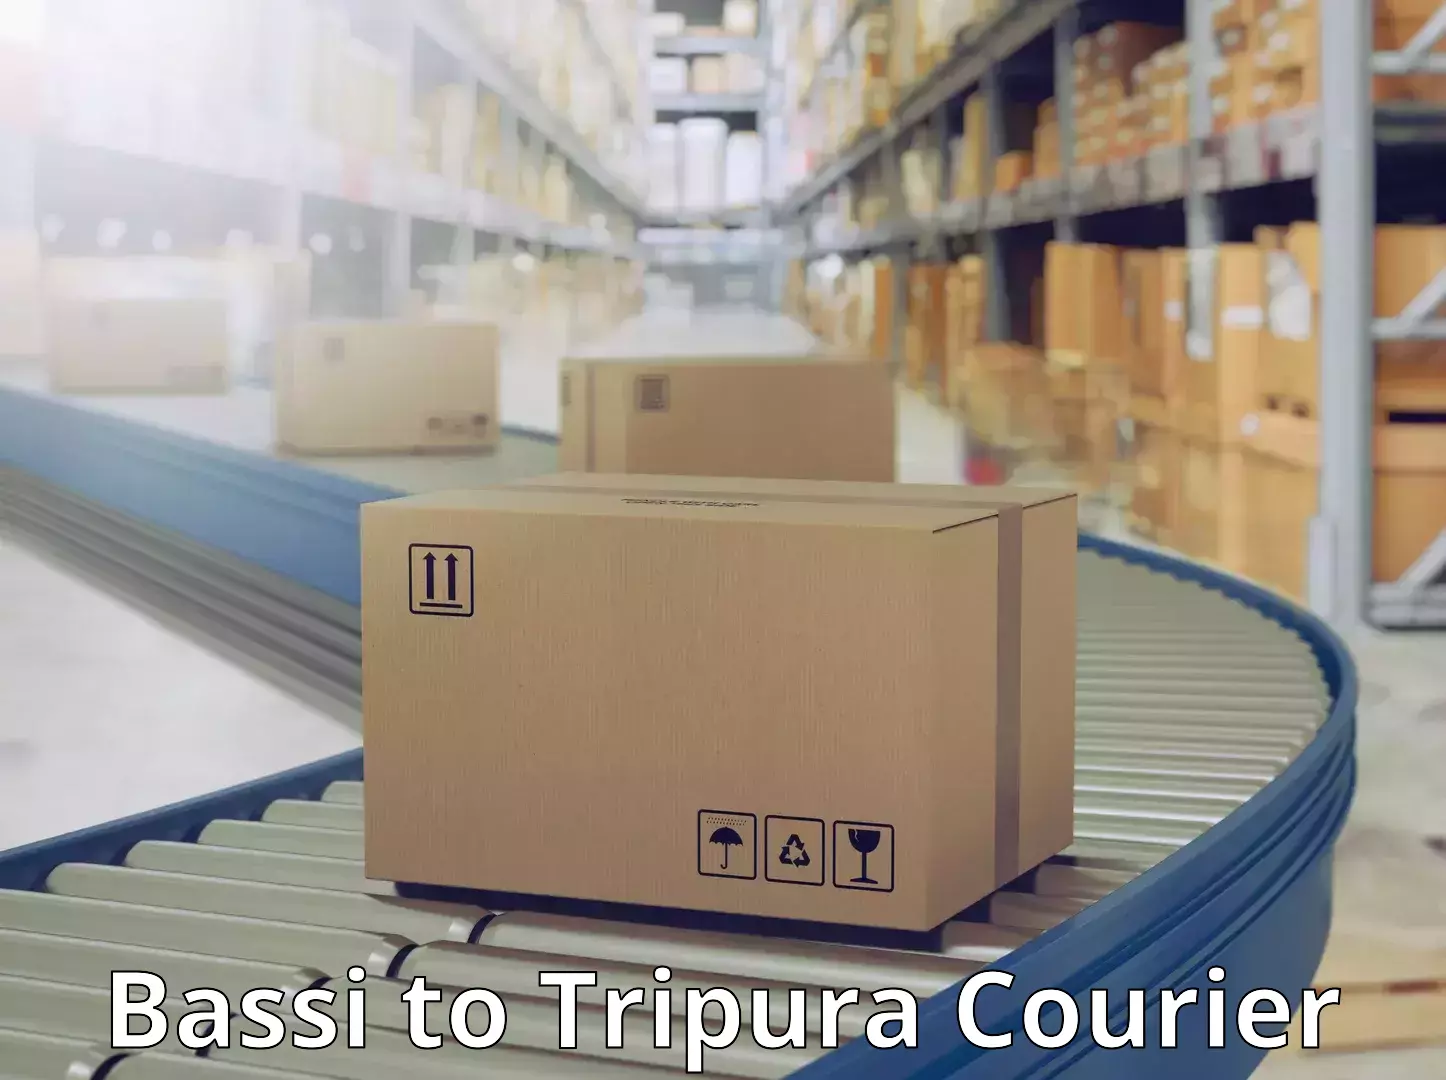 Courier service comparison Bassi to Tripura